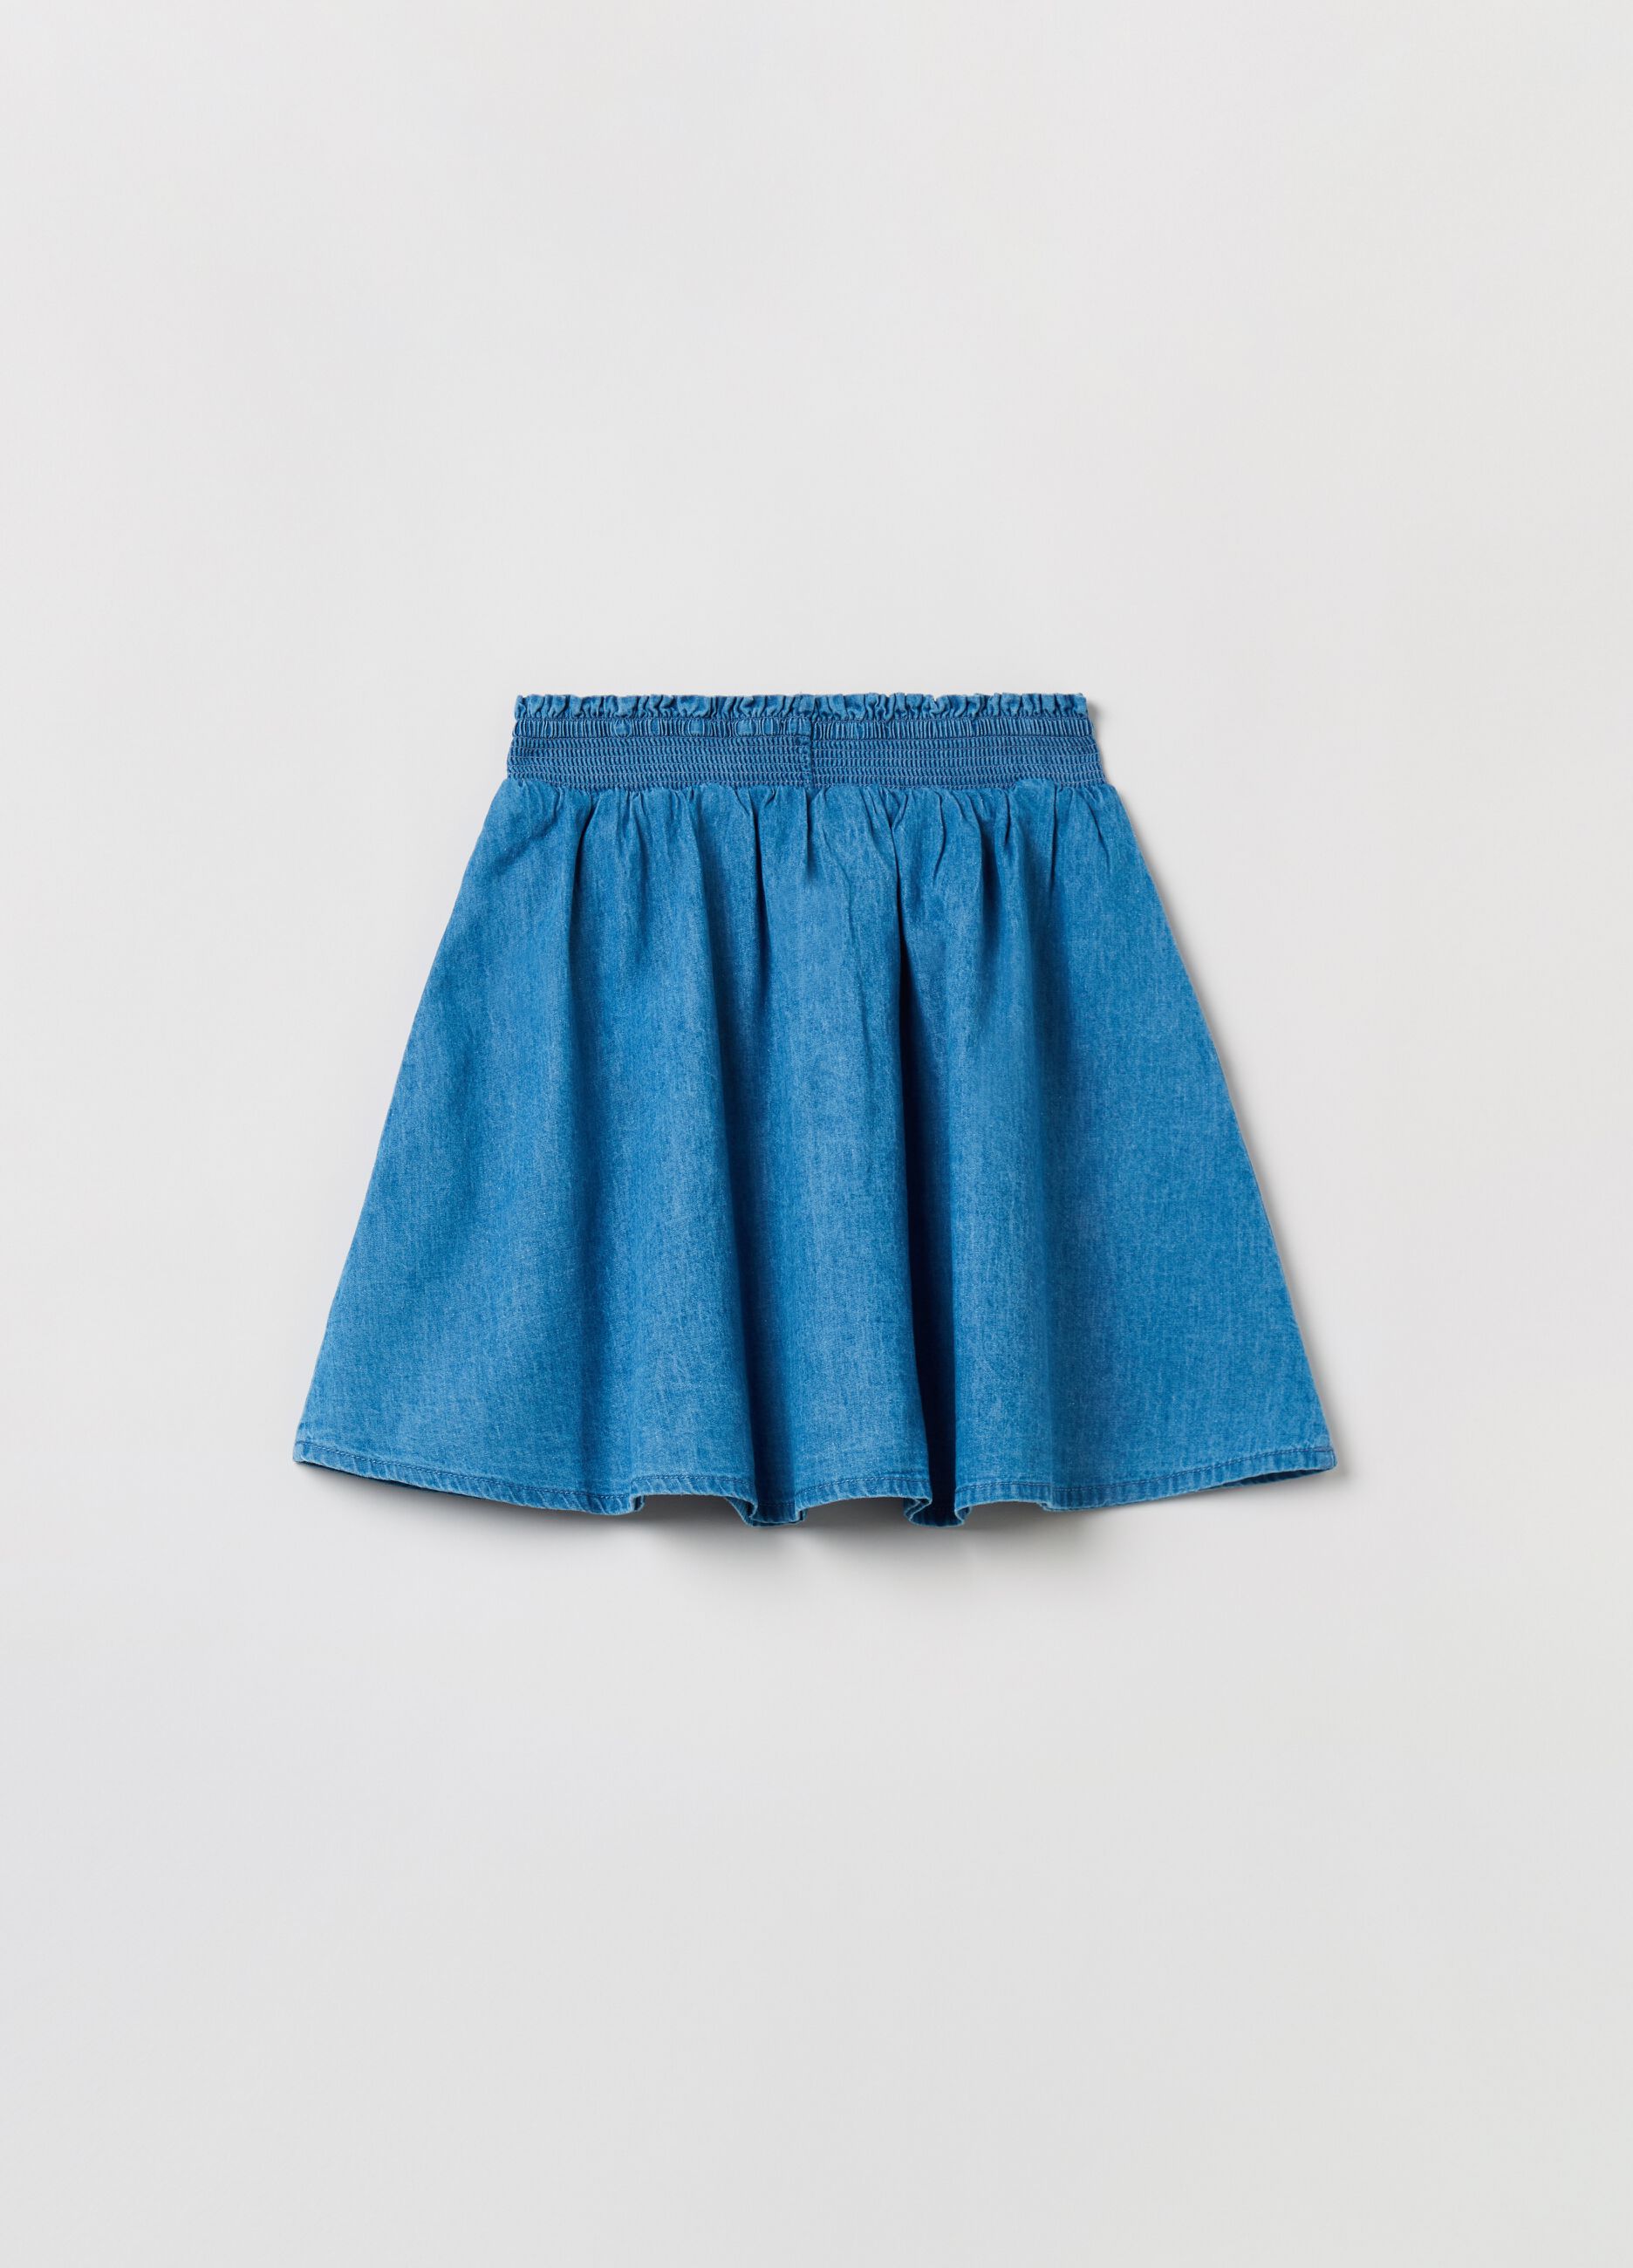 Short skirt in Lyocell